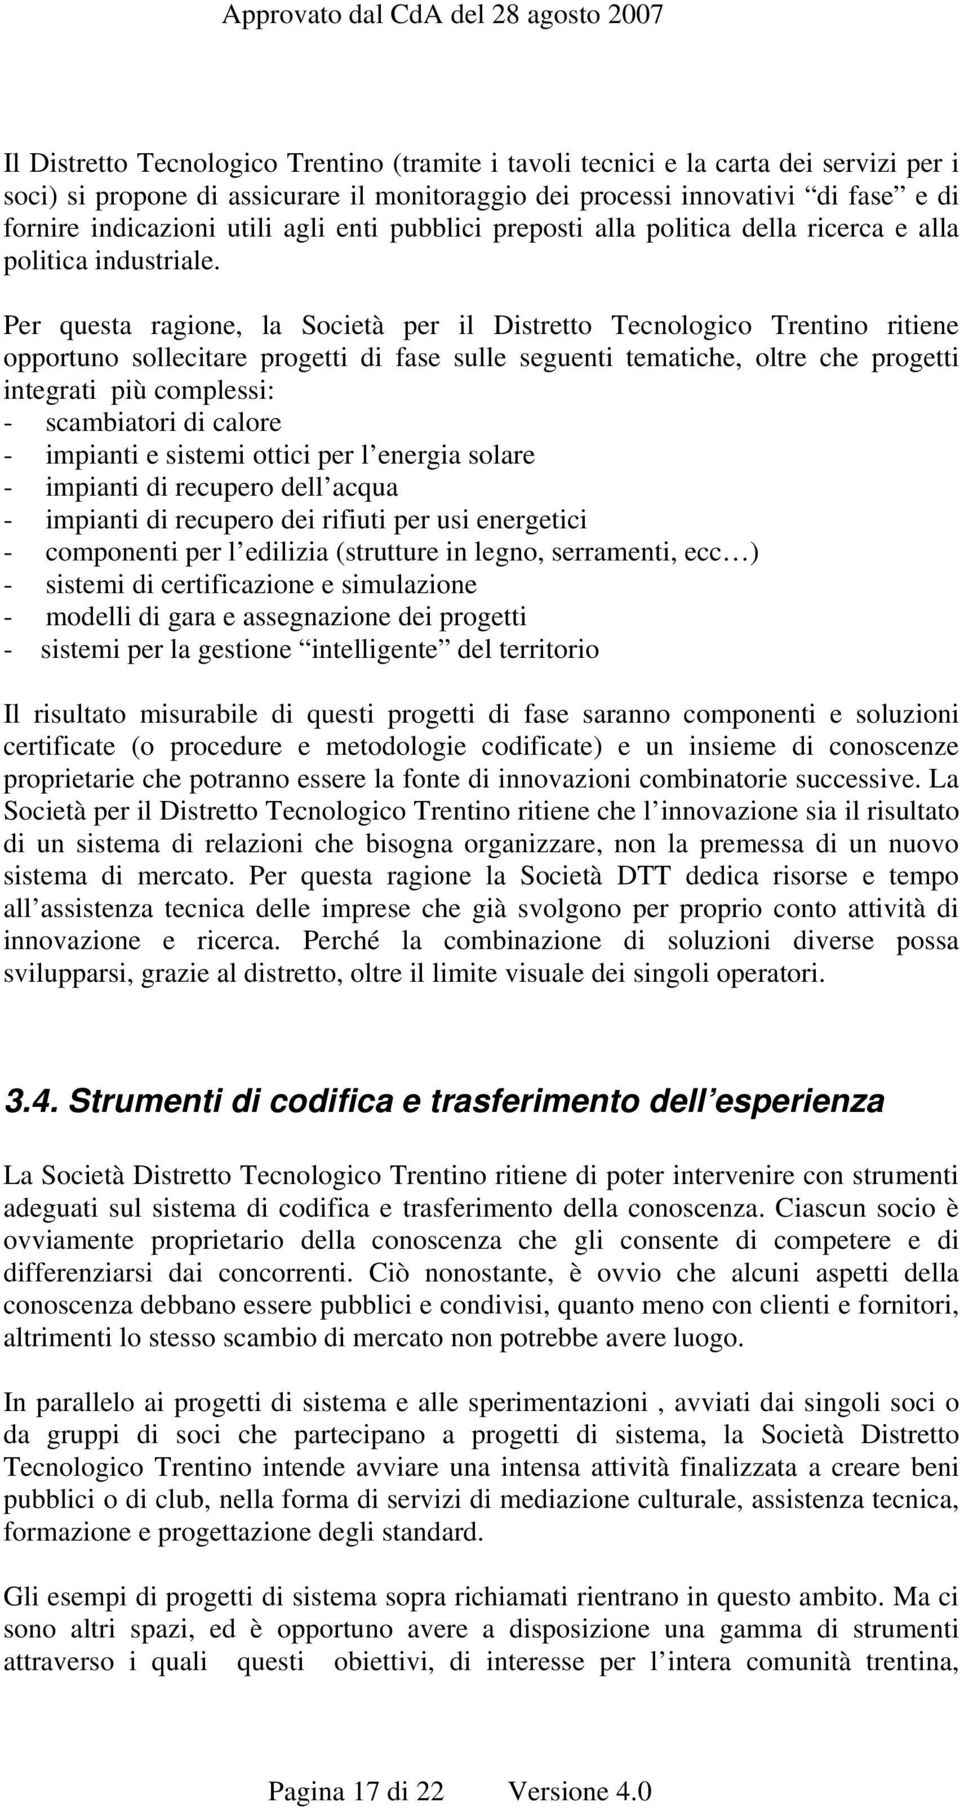 Per questa ragione, la Società per il Distretto Tecnologico Trentino ritiene opportuno sollecitare progetti di fase sulle seguenti tematiche, oltre che progetti integrati più complessi: - scambiatori